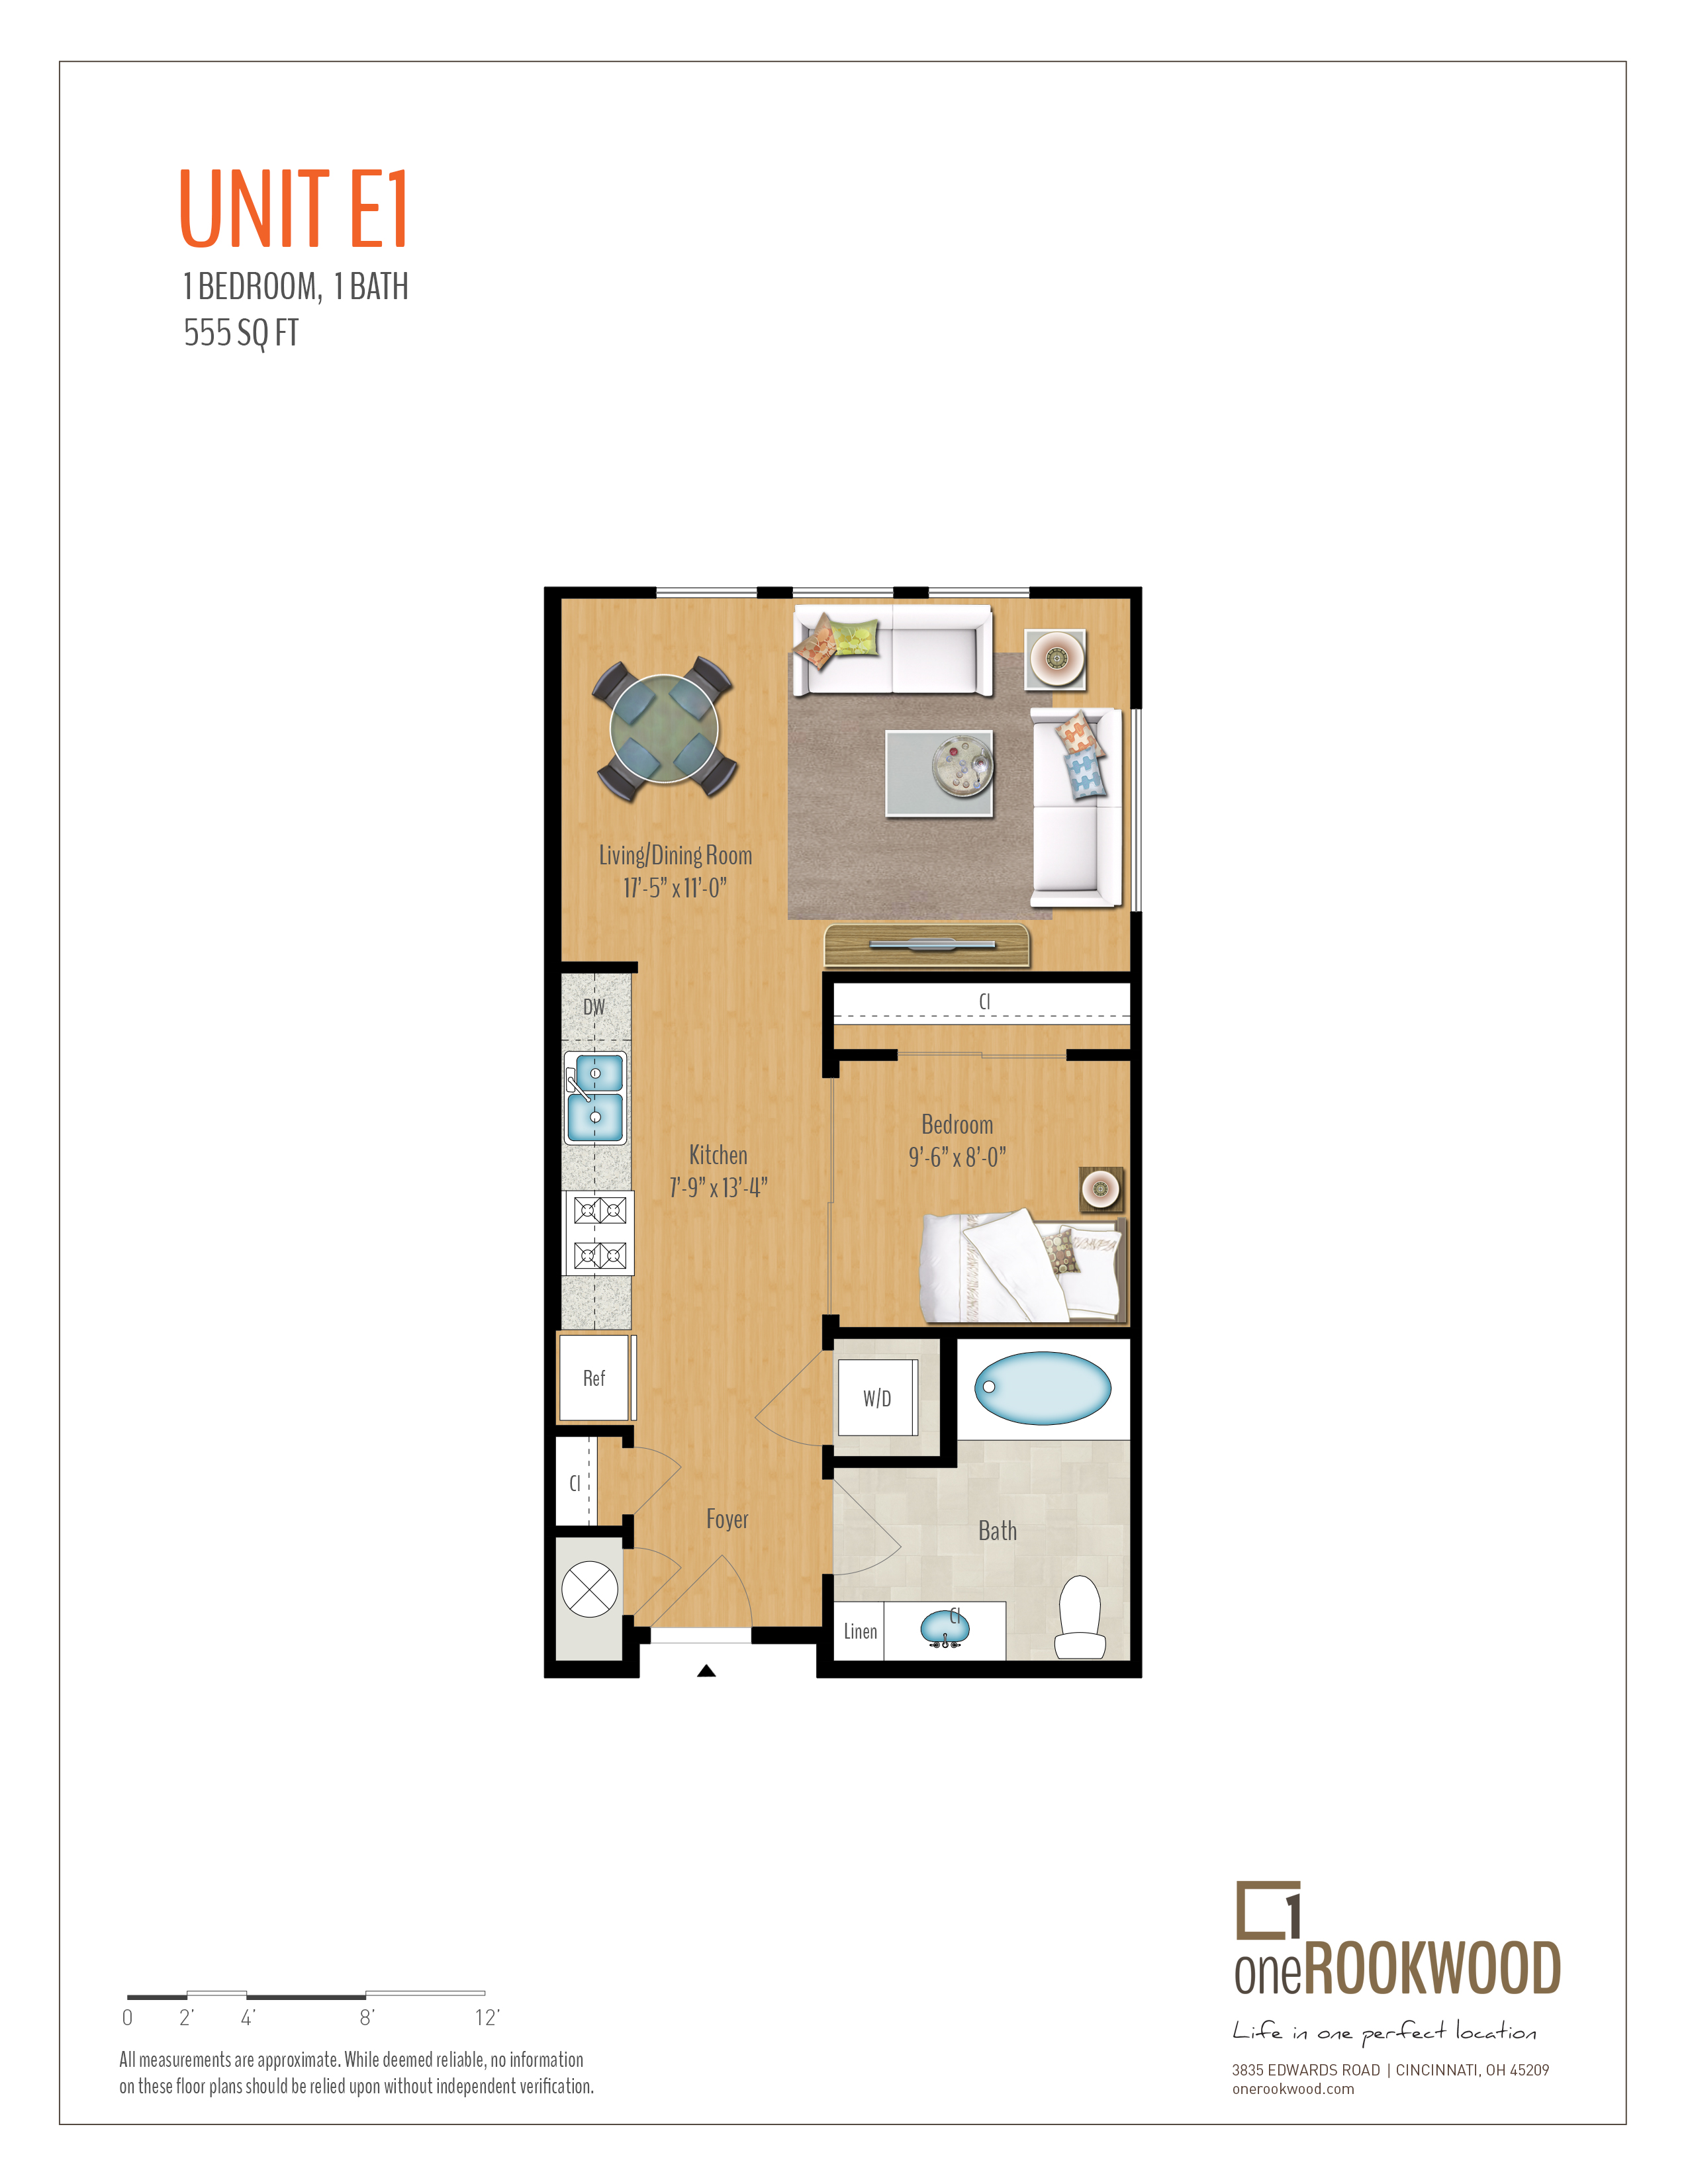 OneRookwood-Unit E1-FloorPlan-Print.jpg